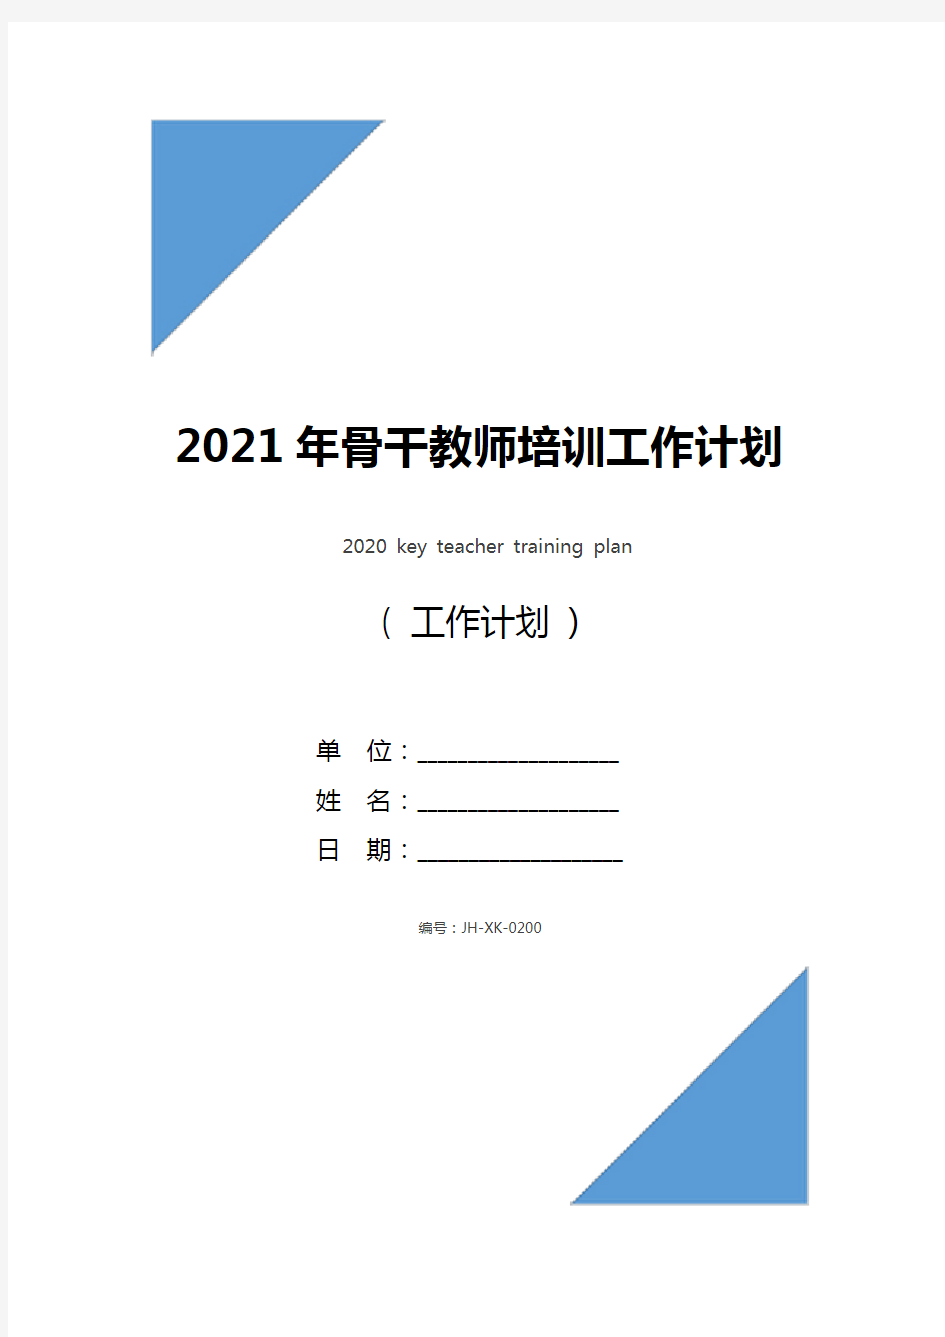 2021年骨干教师培训工作计划(标准版)